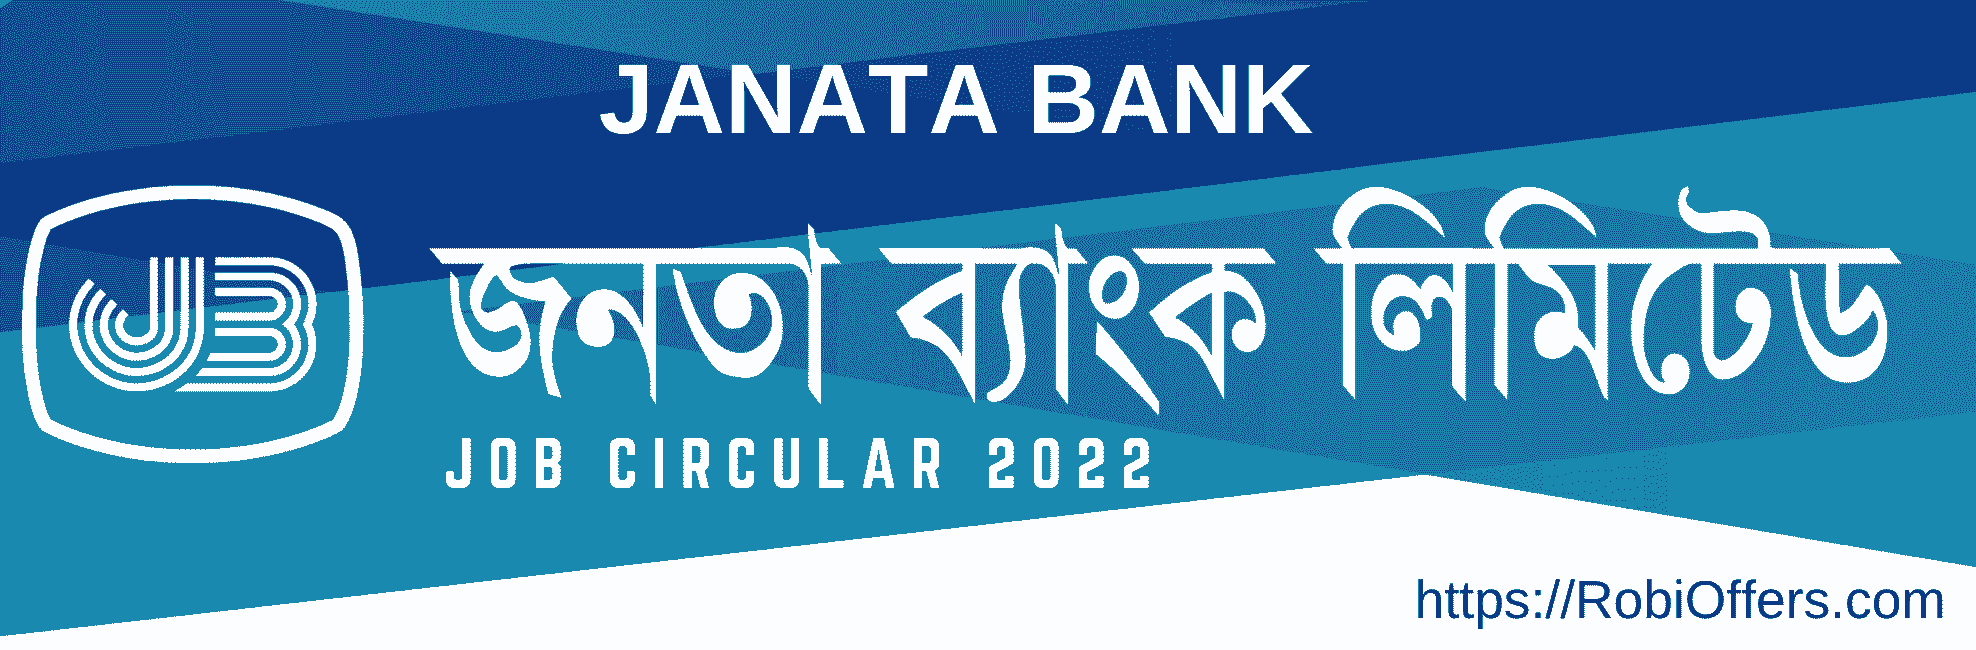 Janata Bank Job Circular 2022